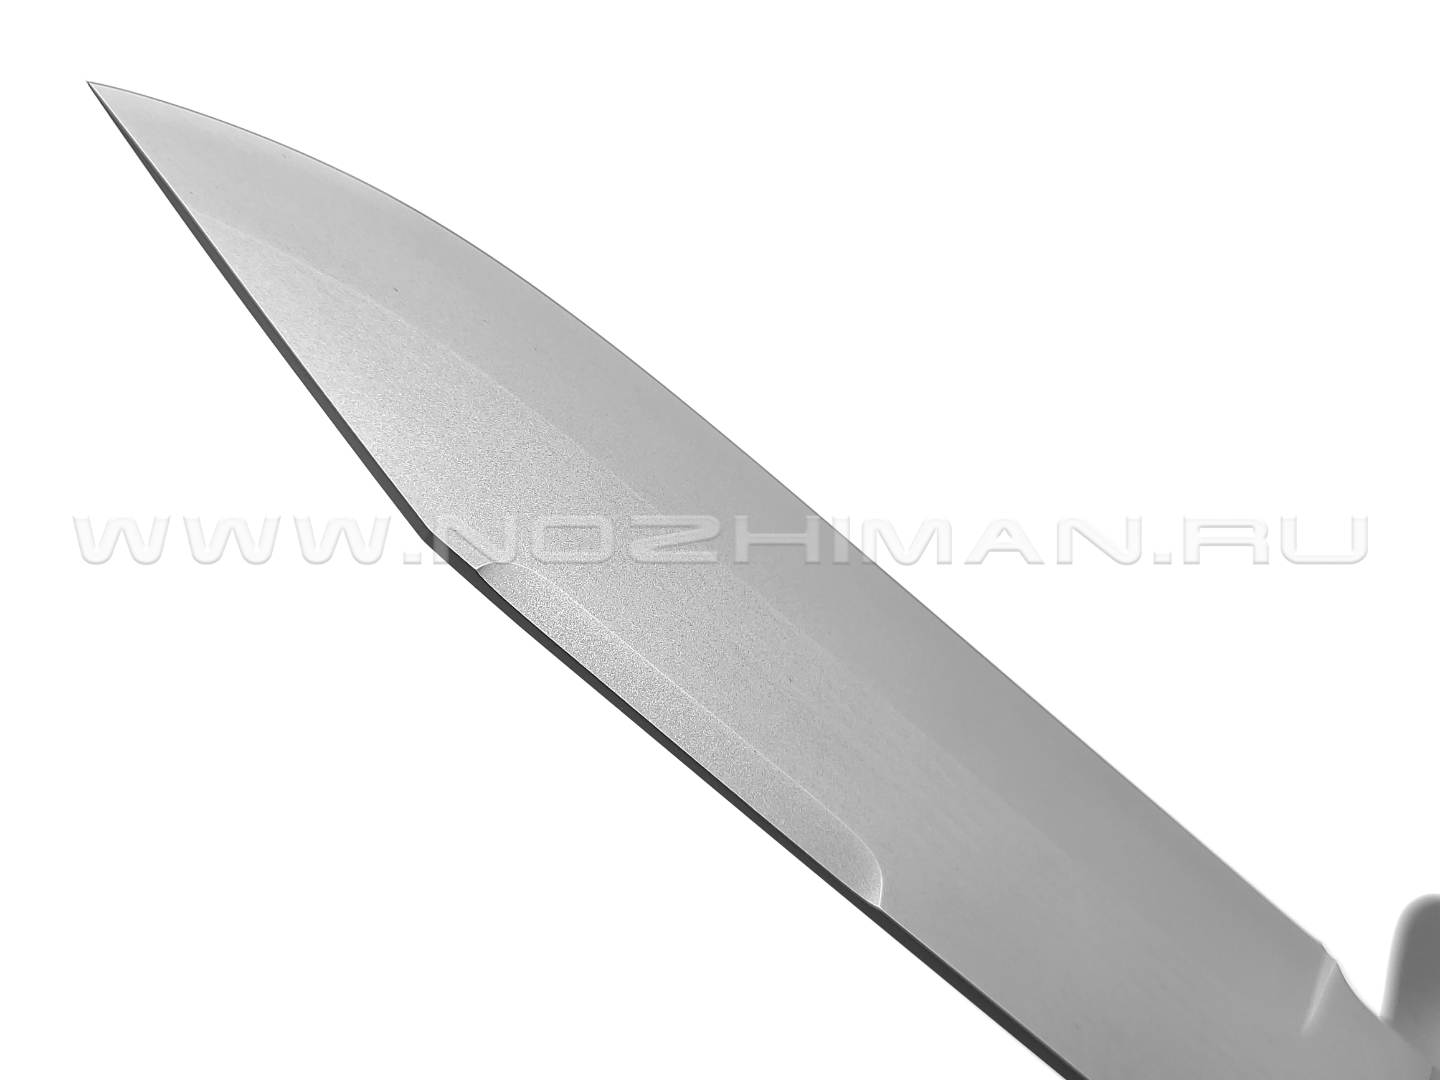 Saro нож НР-2000 сталь Х12МФ, рукоять резина